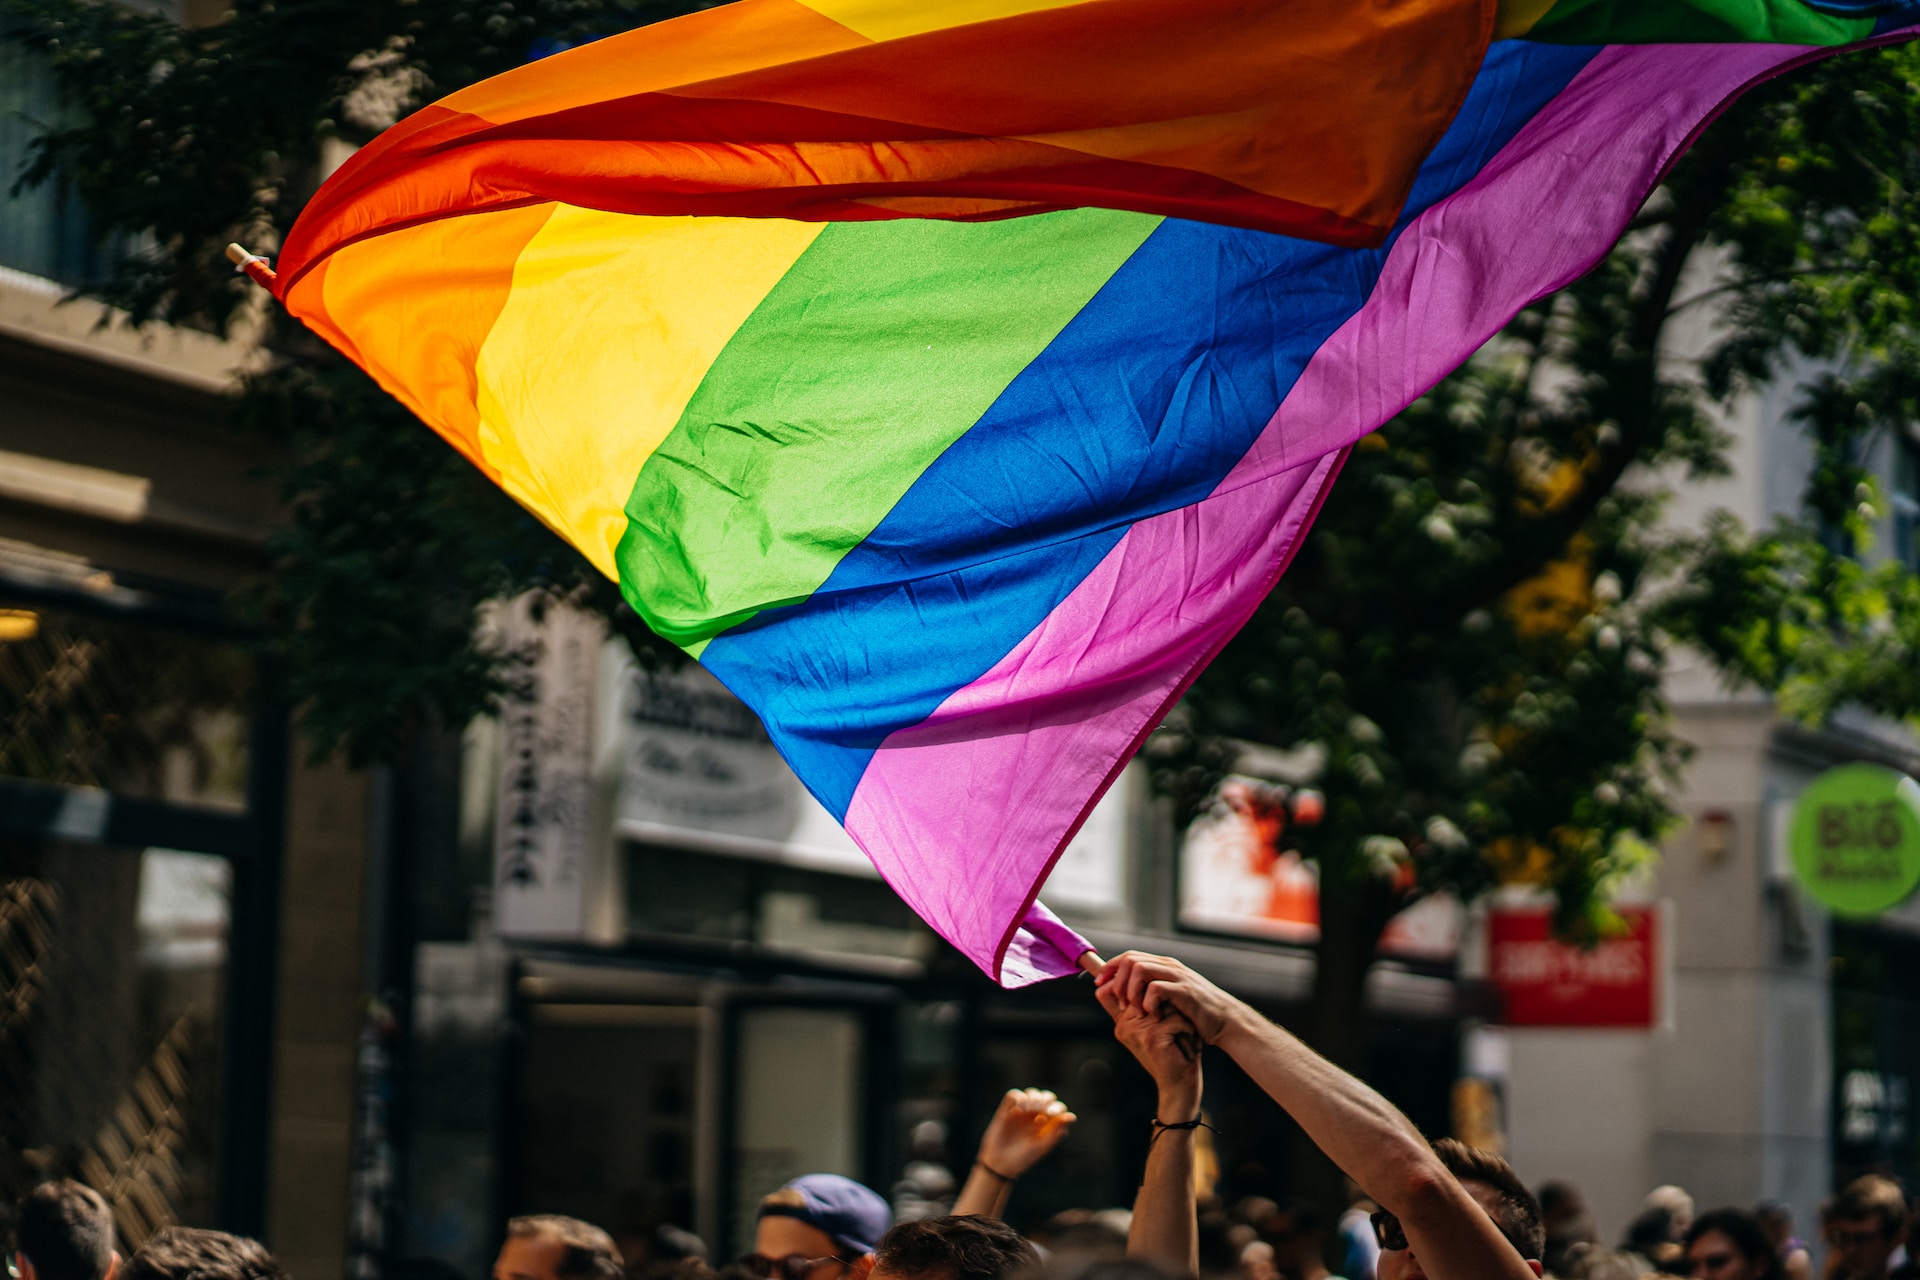 σημαία ουράνιο τόξο σύμβολο της LGBTQ+ κοινότητας